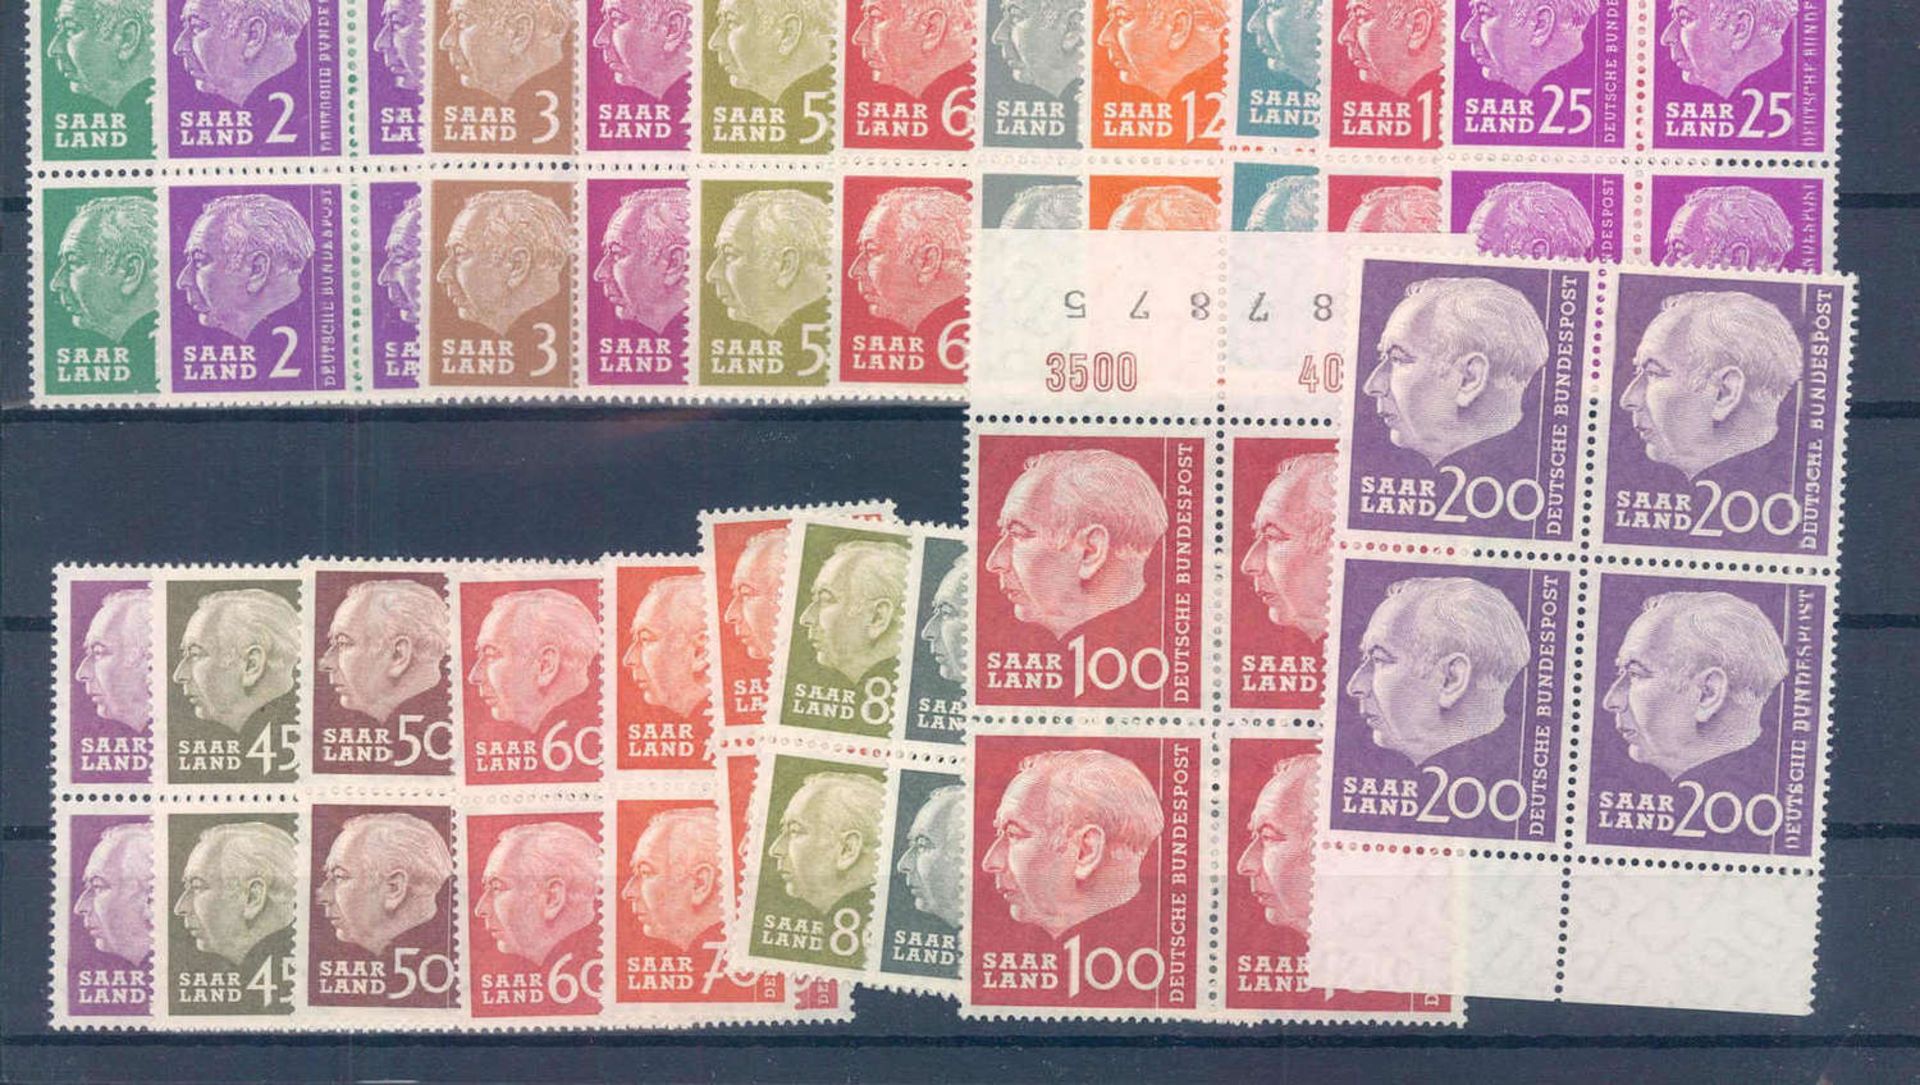 Saarland 1957, Freim. Bundespräsident Theodor Heuss, Mi.Nr. 380-399, Katalog Preis 100